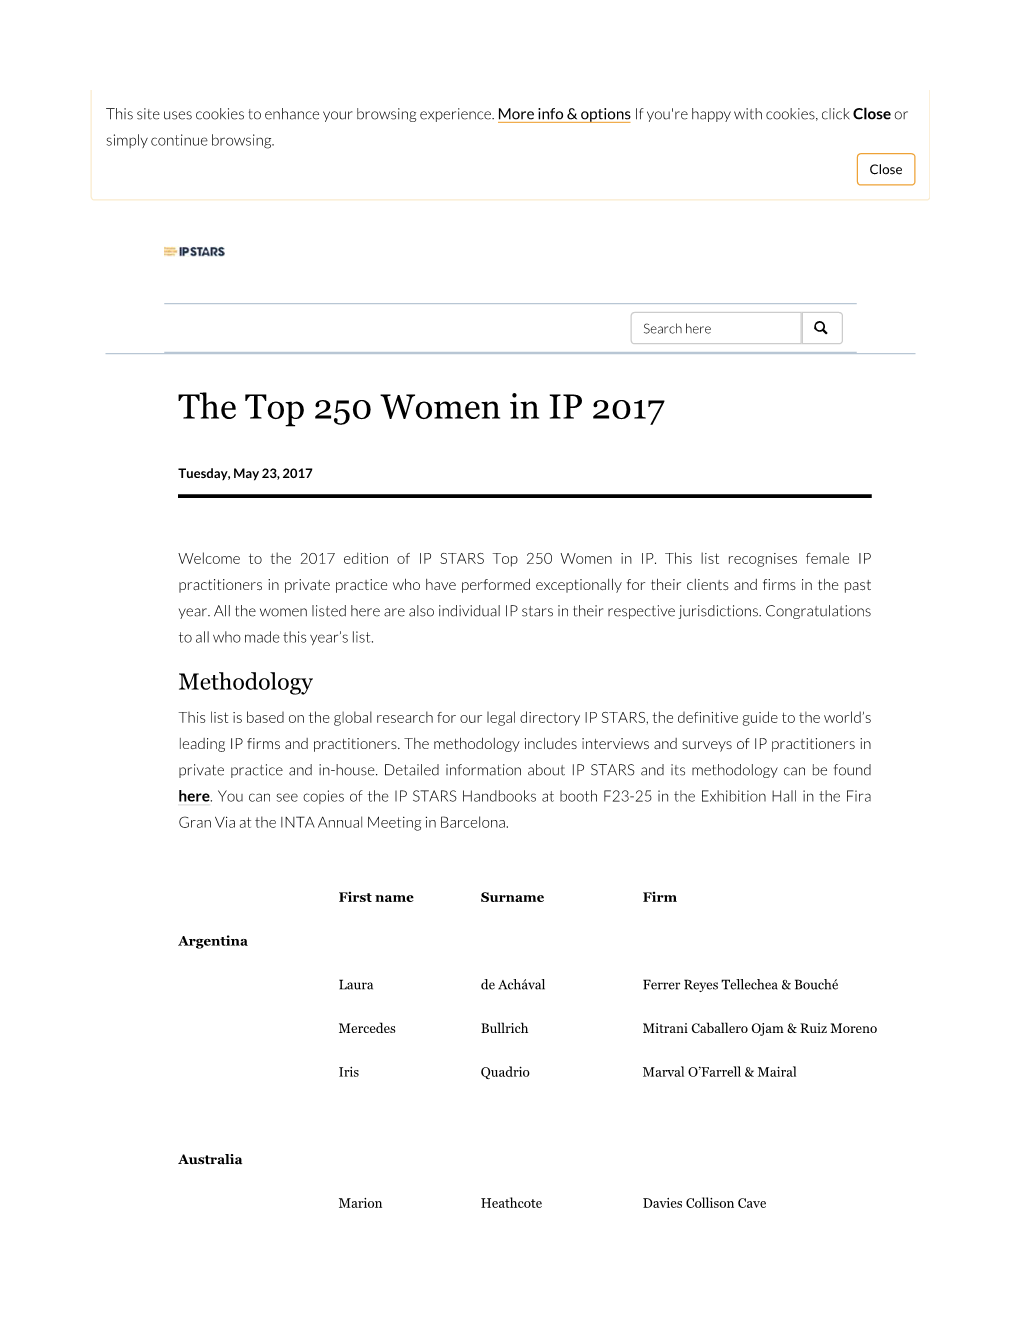 20170523-DTO-MIP-Top-250-Women